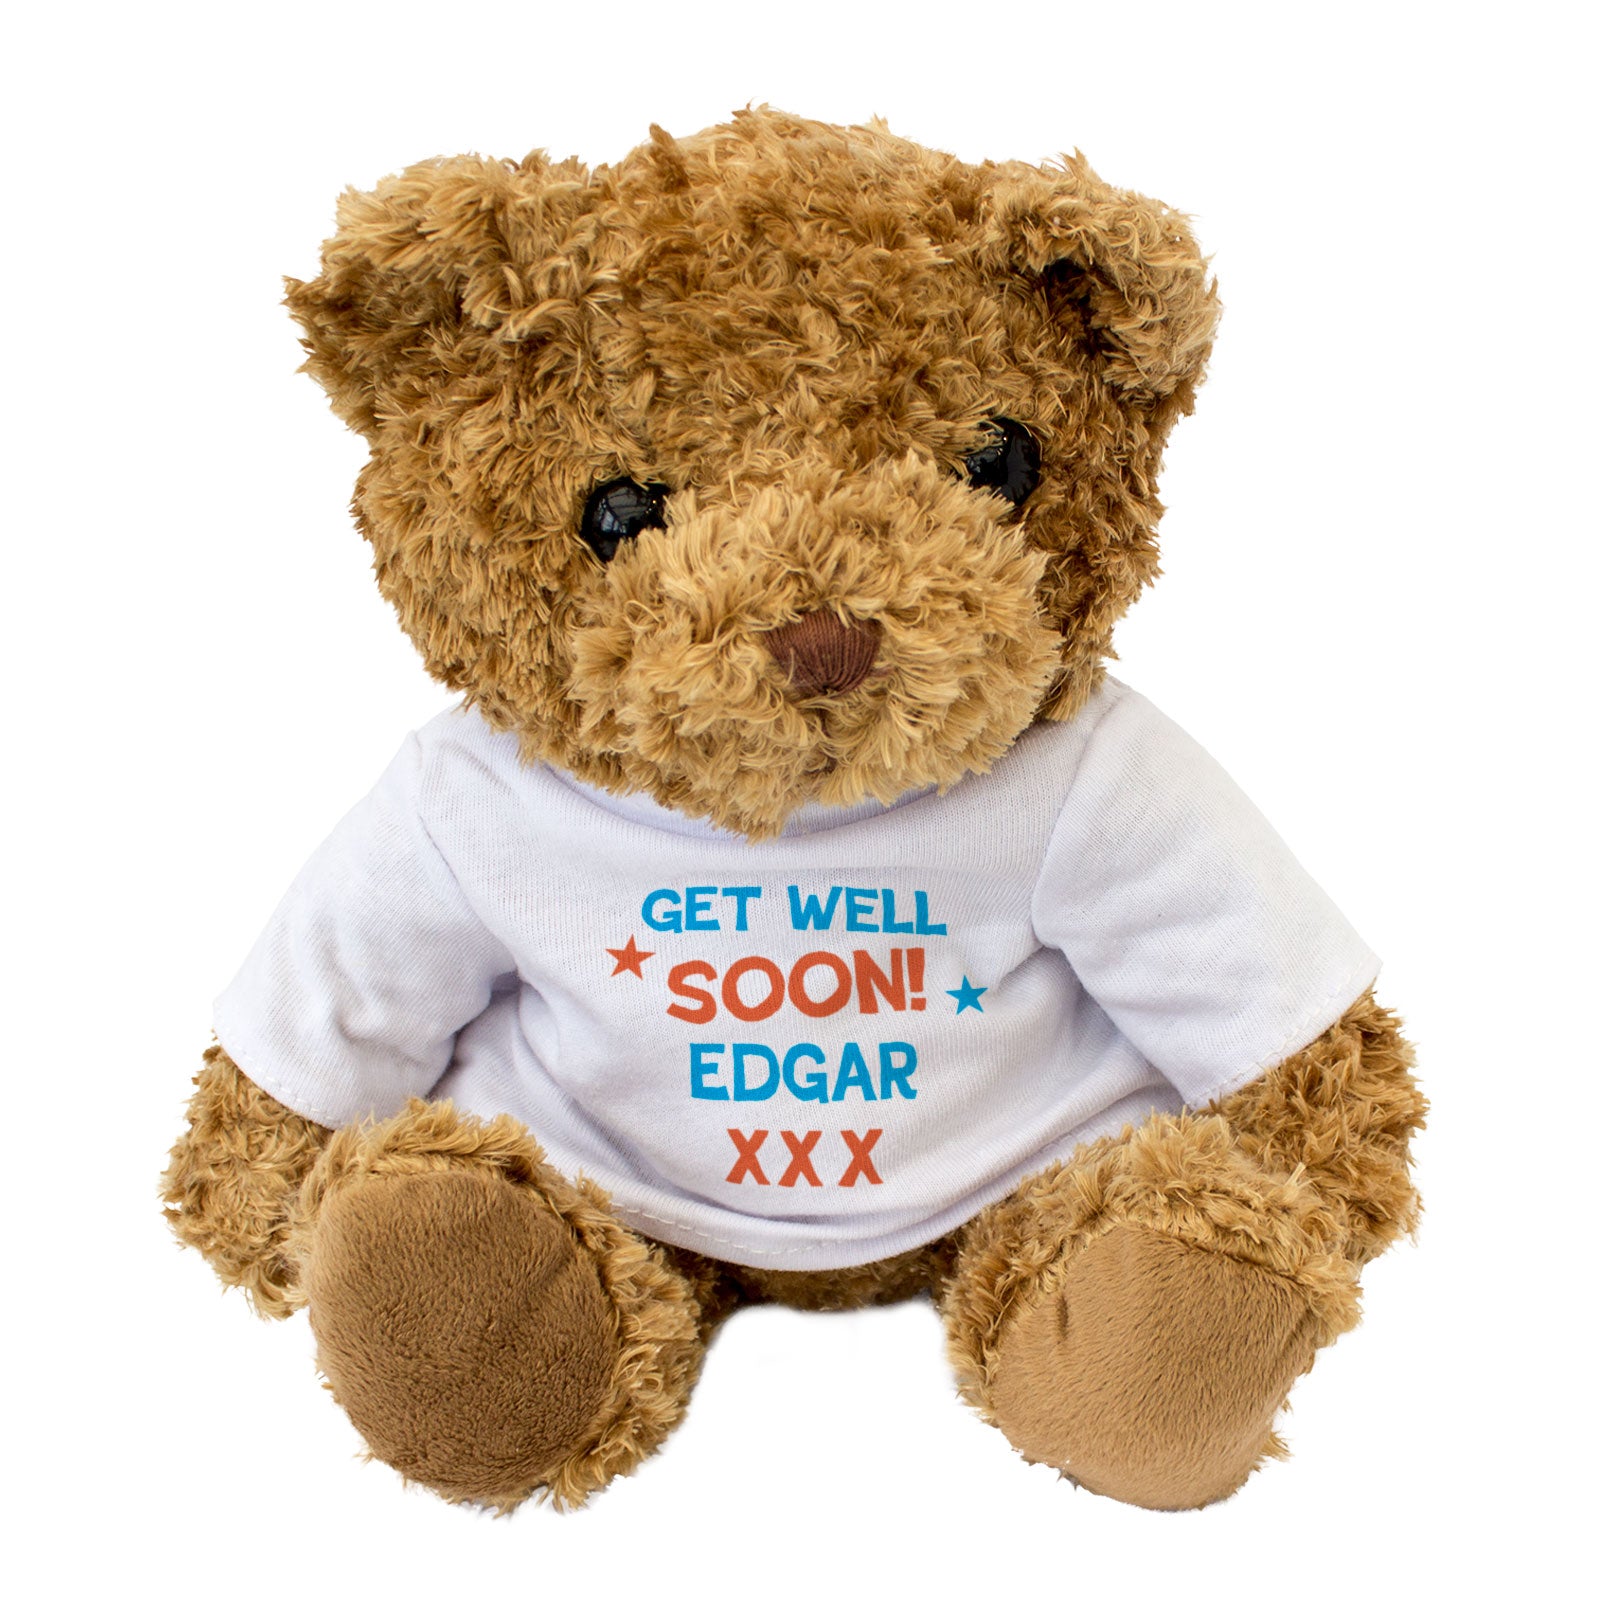 Get Well Soon Edgar - Teddy Bear